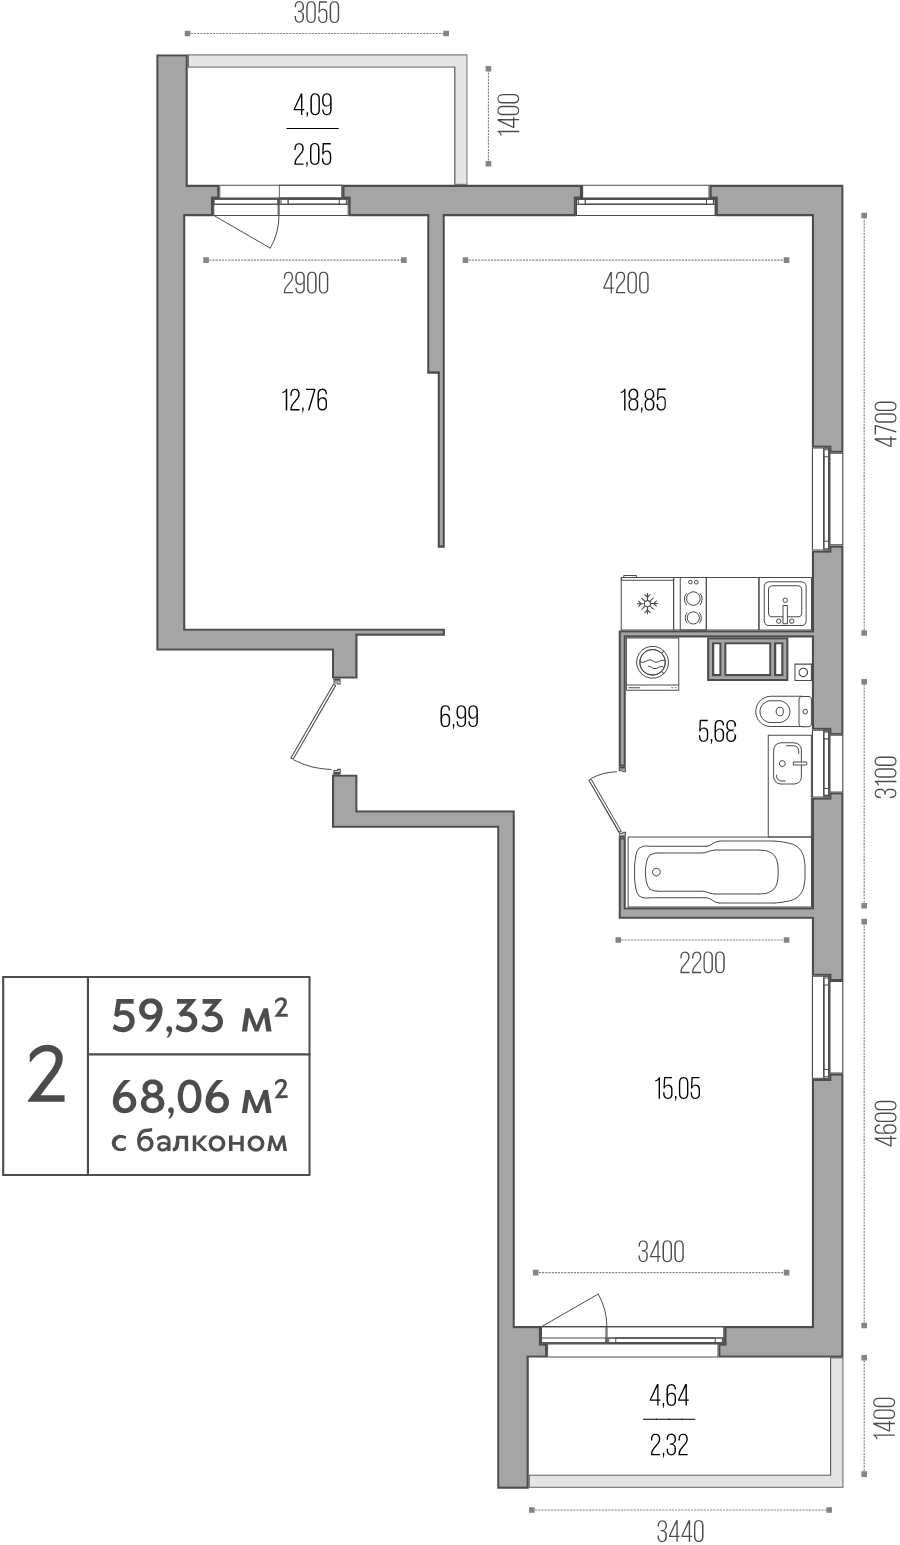 3-комнатная (Евро) квартира, 59.33 м² в ЖК "Simple" - планировка, фото №1